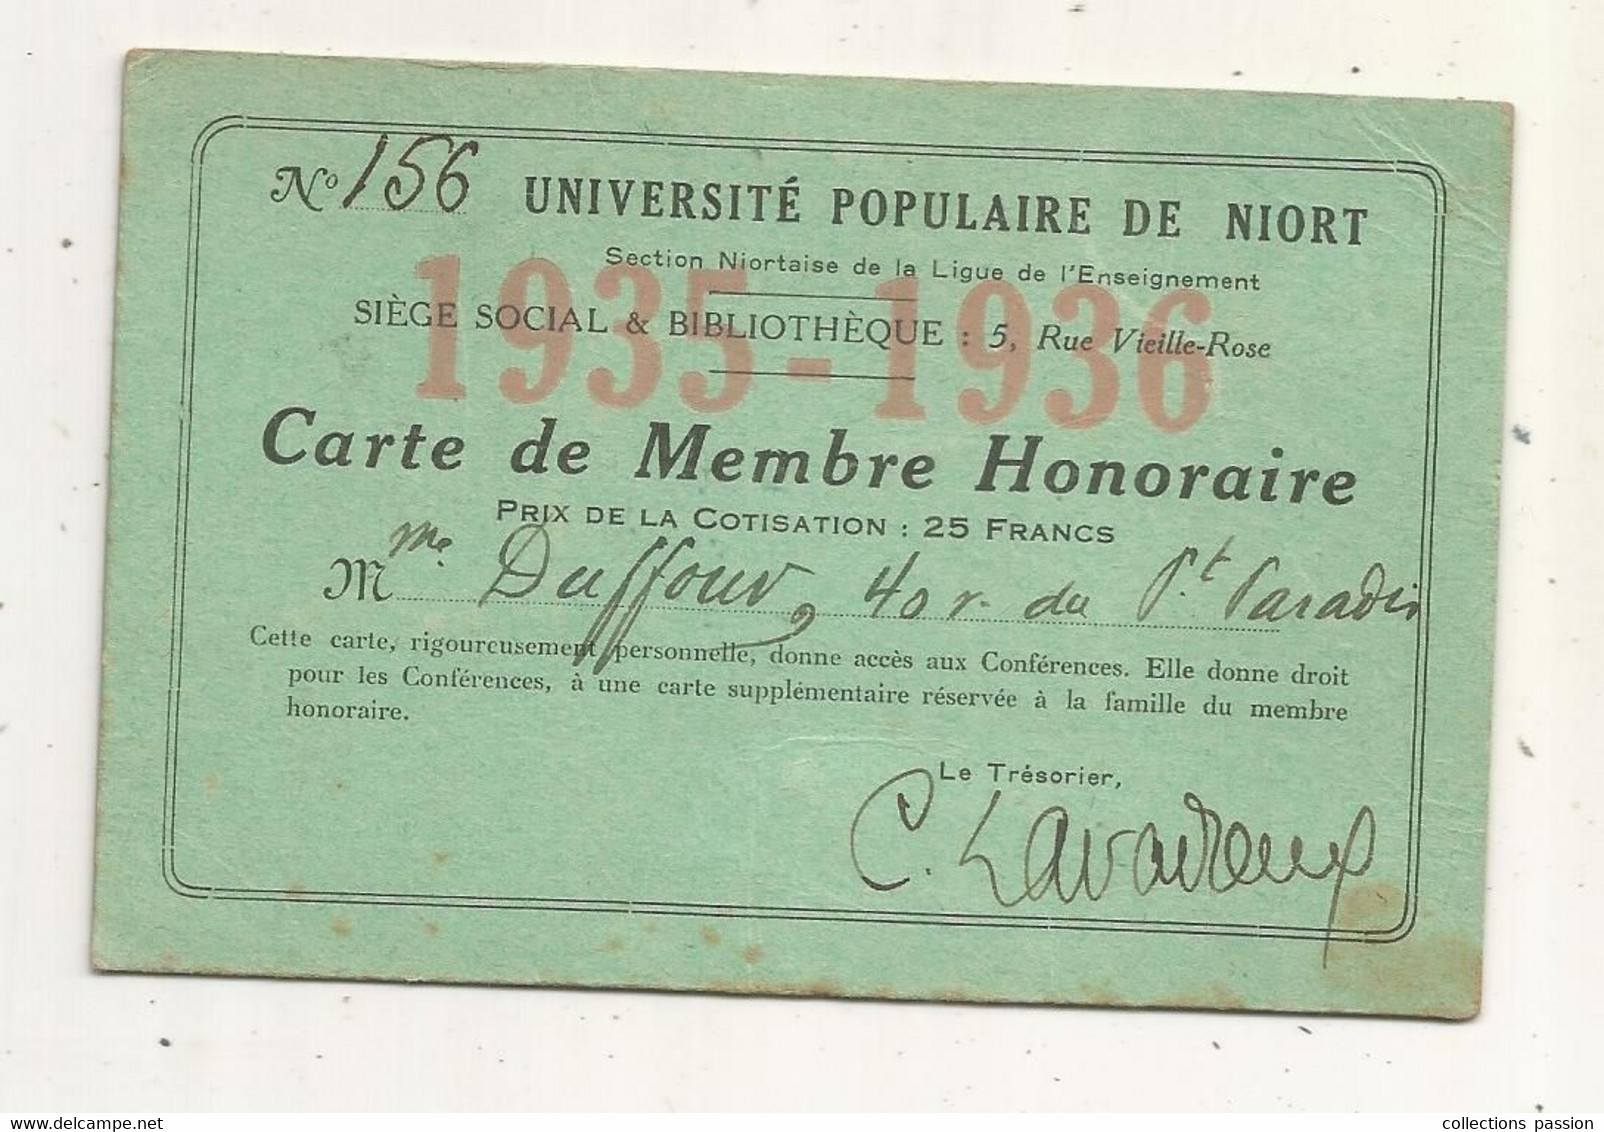 Carte De Membre Honoraire , UNIVERSITE POPULAIRE DE NIORT,1935-1936 - Lidmaatschapskaarten